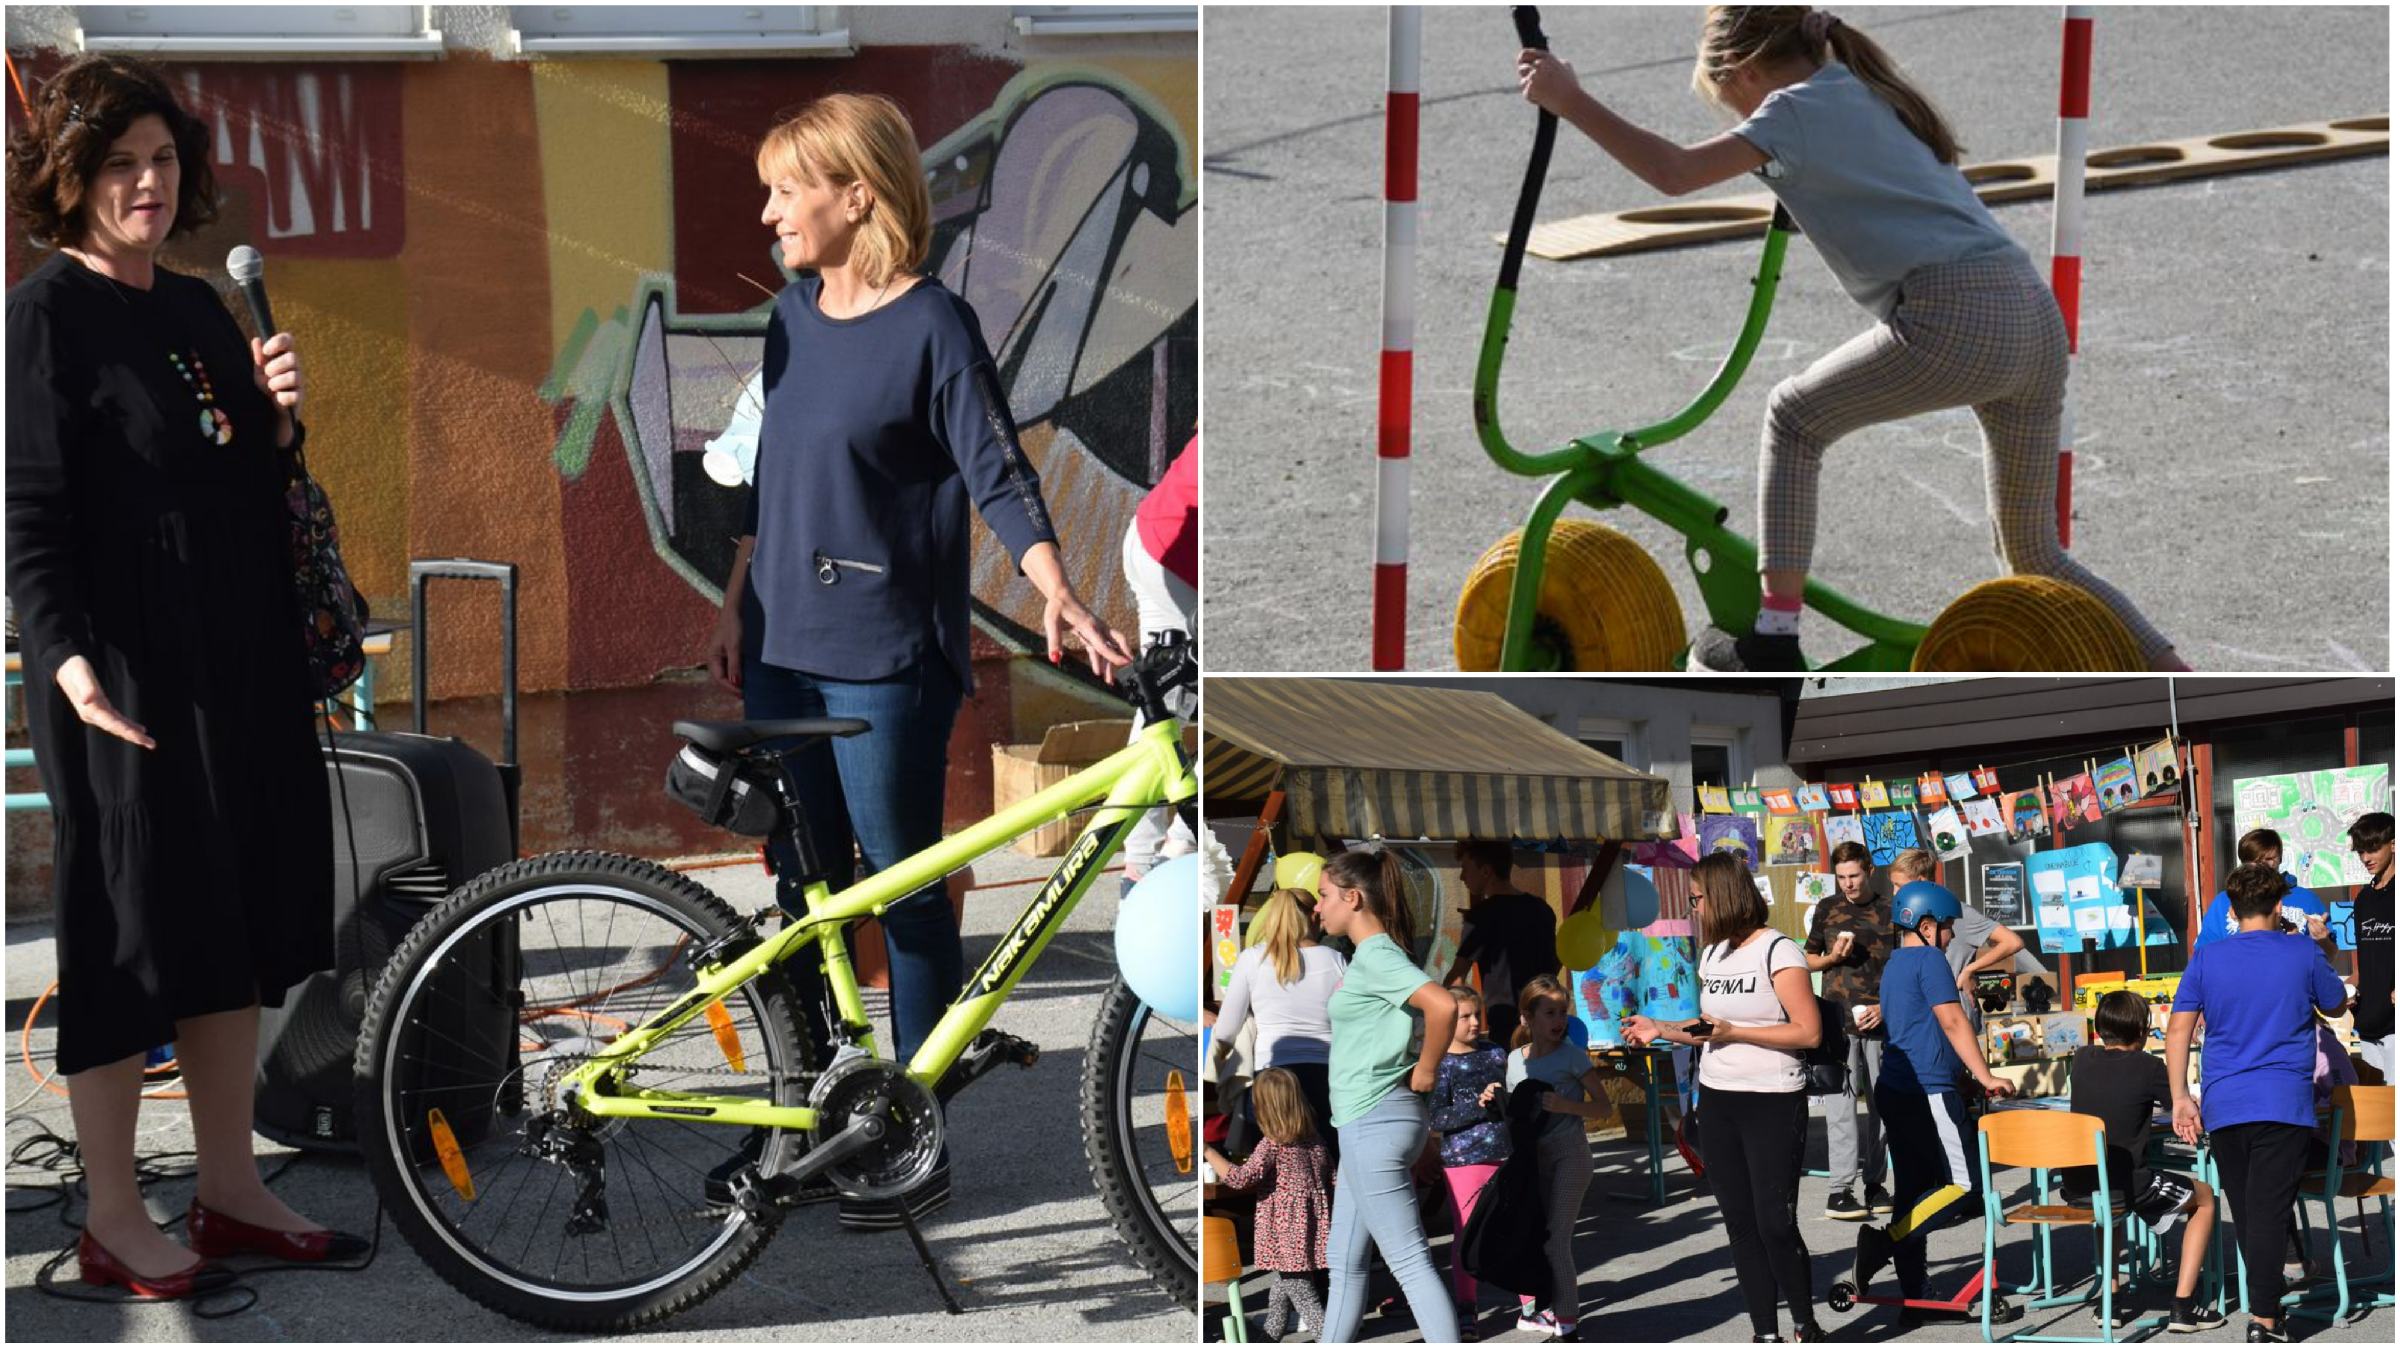 FOTO: Selniška šola bogatejša za novo kolo